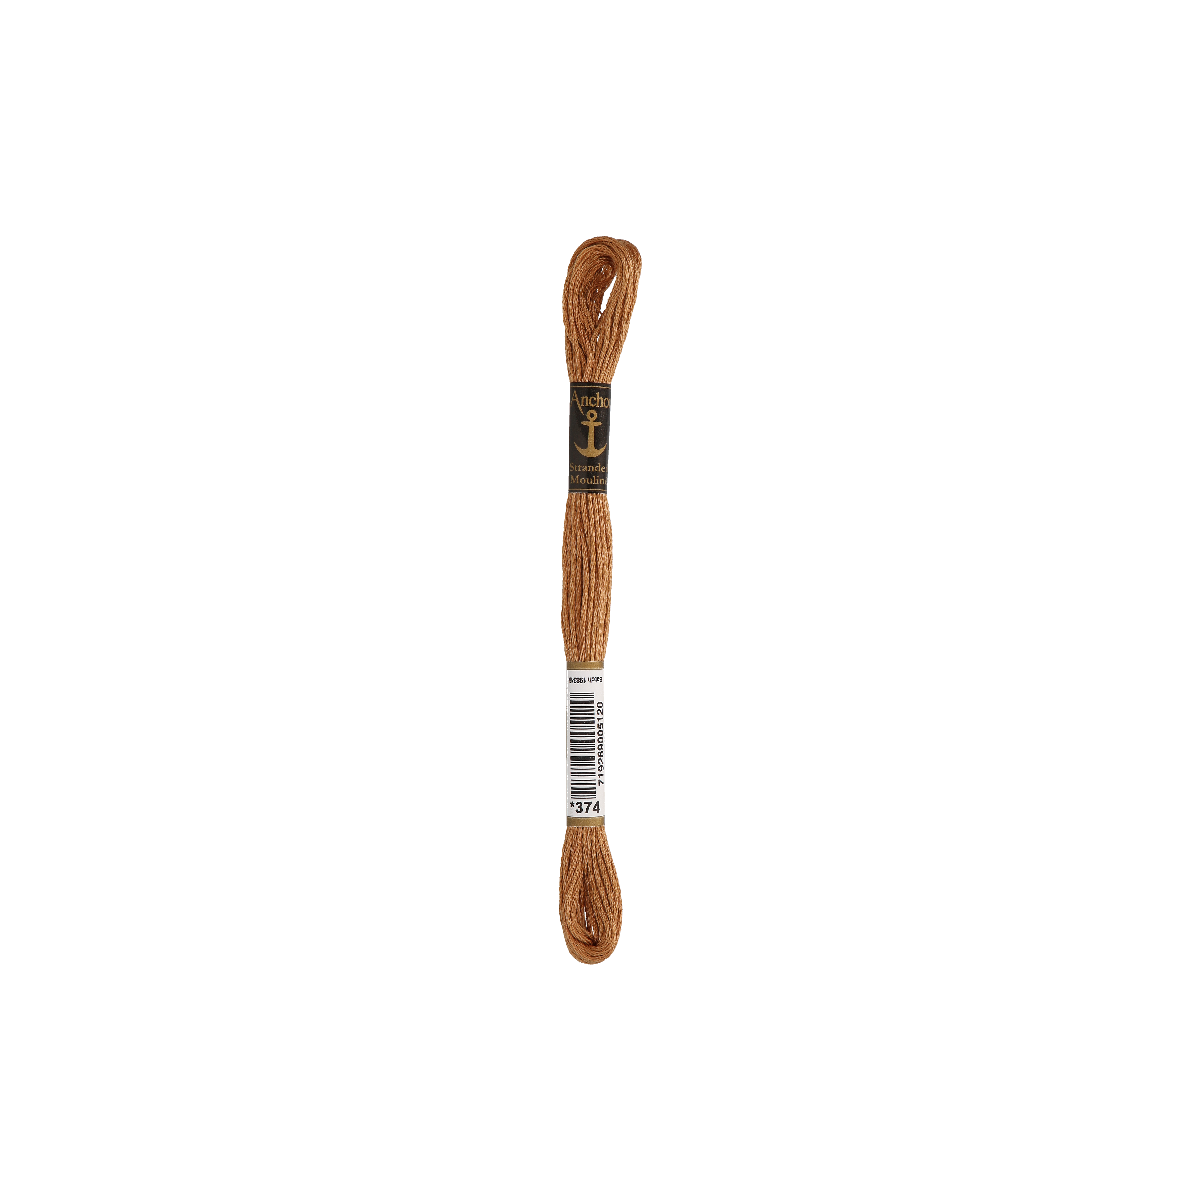 Anchor Sticktwist 8m, zenzero, cotone, colore 374, 6 fili